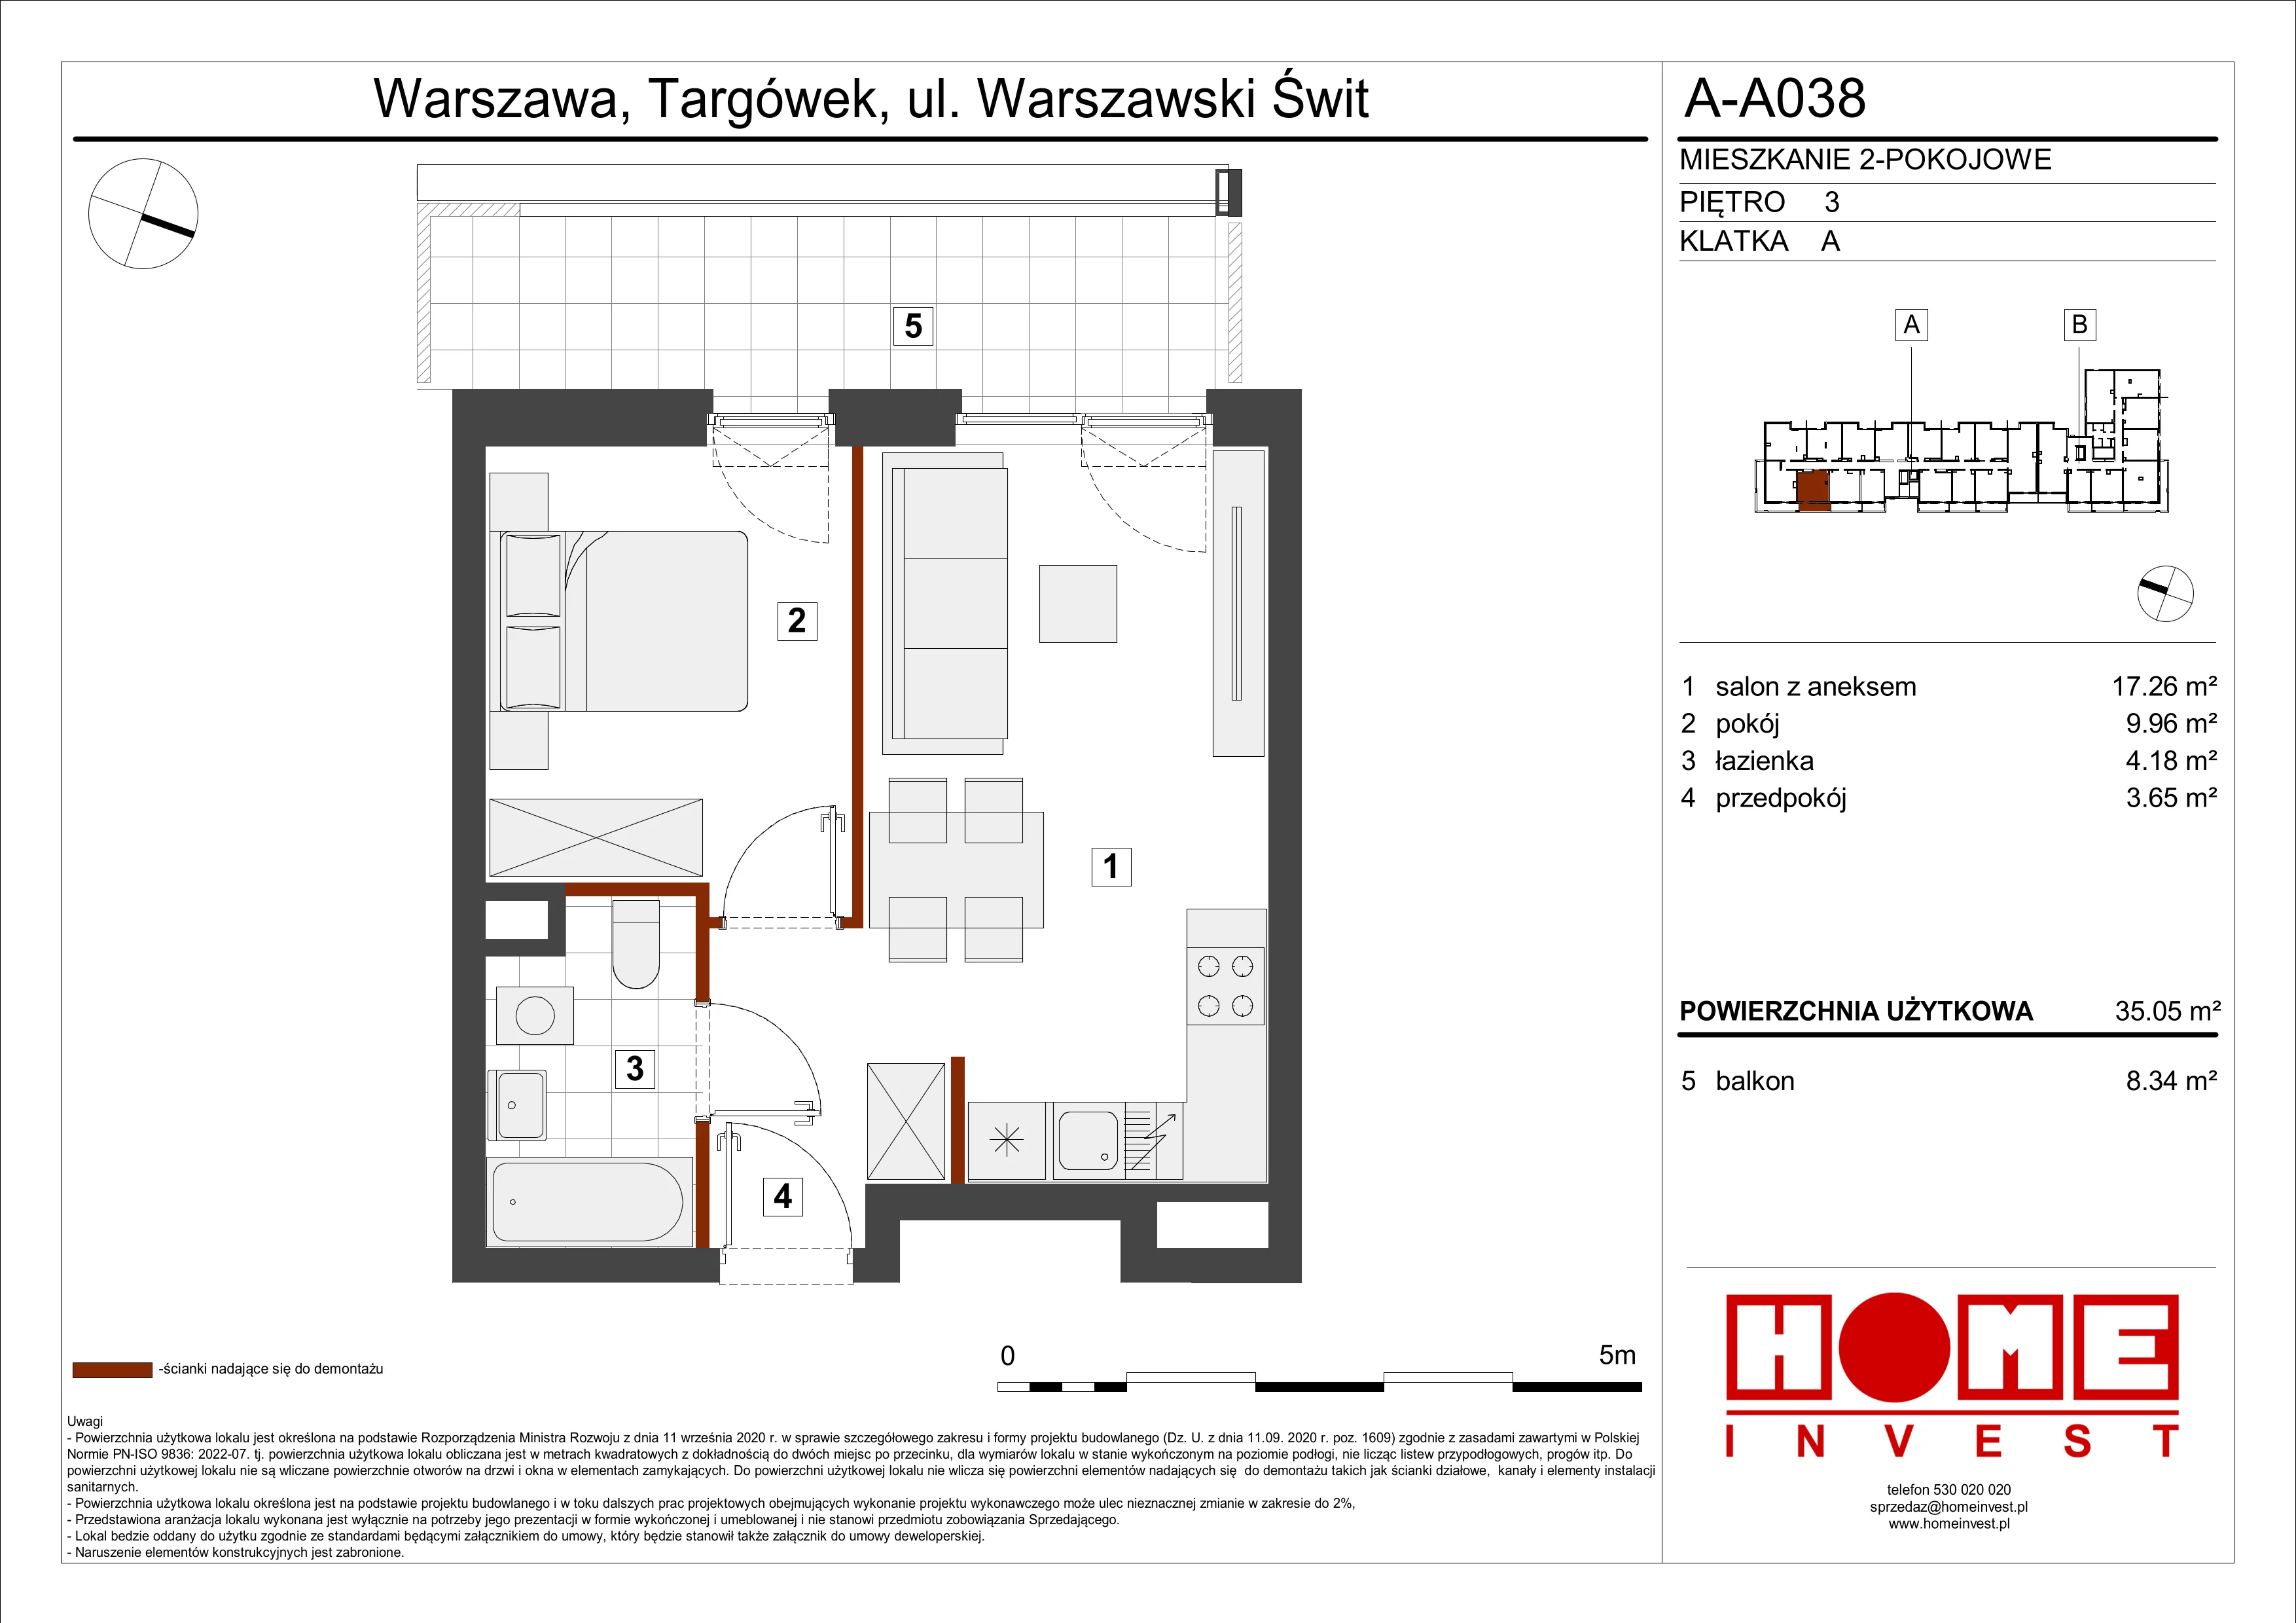 Mieszkanie 35,05 m², piętro 3, oferta nr A-A038, Warszawski Świt, Warszawa, Targówek, Bródno, ul. Warszawski Świt 5